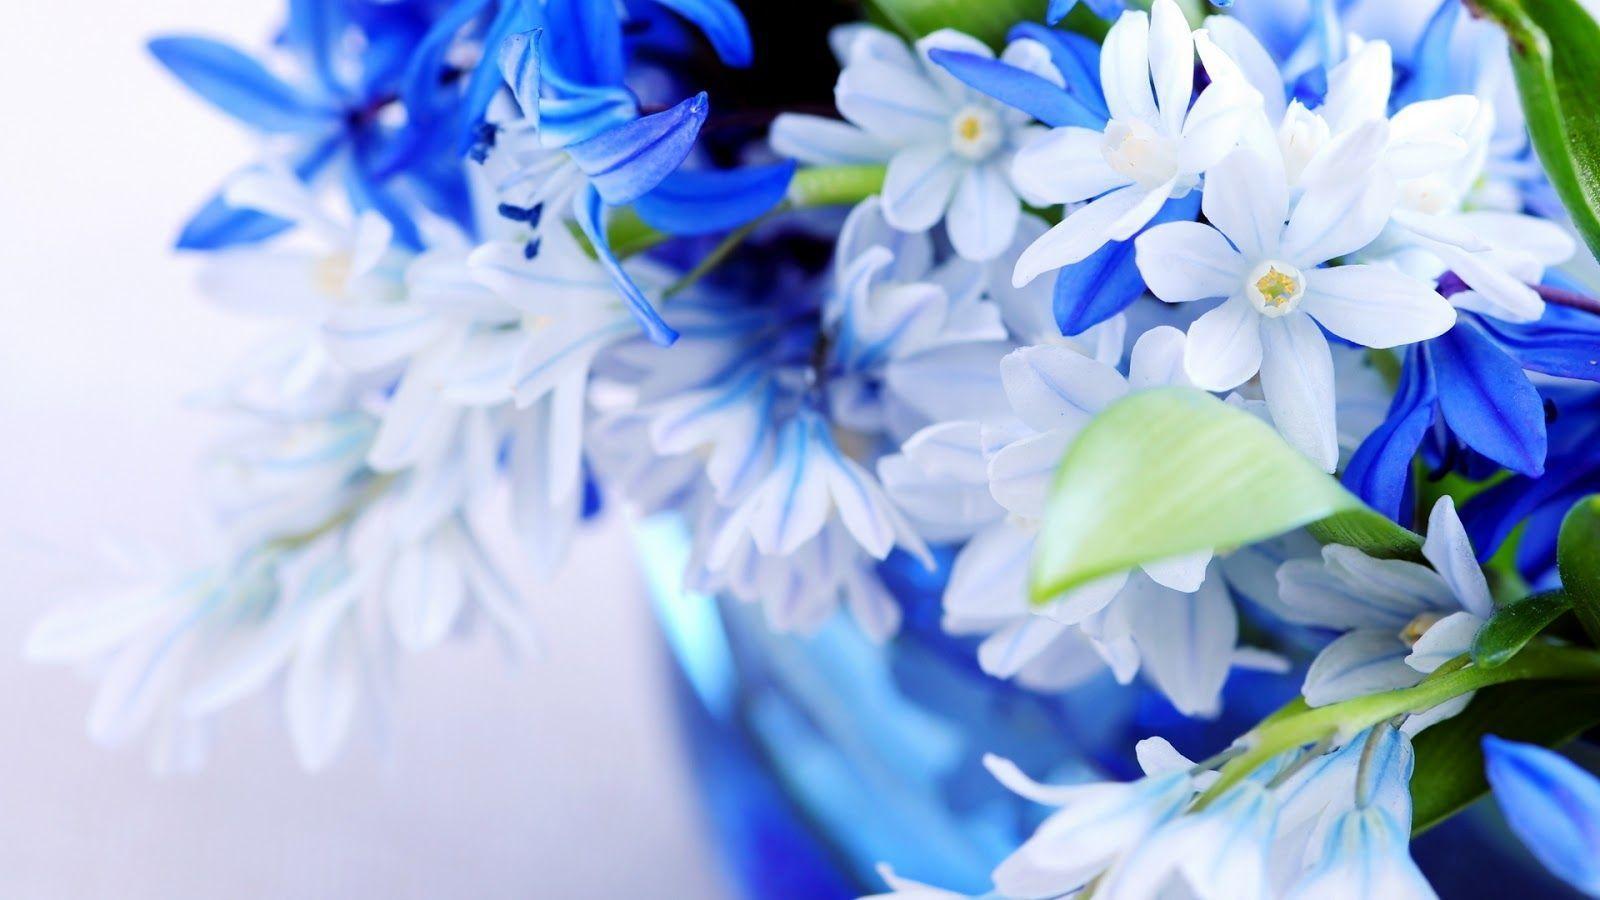 flowers for flower lovers.: Beautiful flowers desktop wallpaper